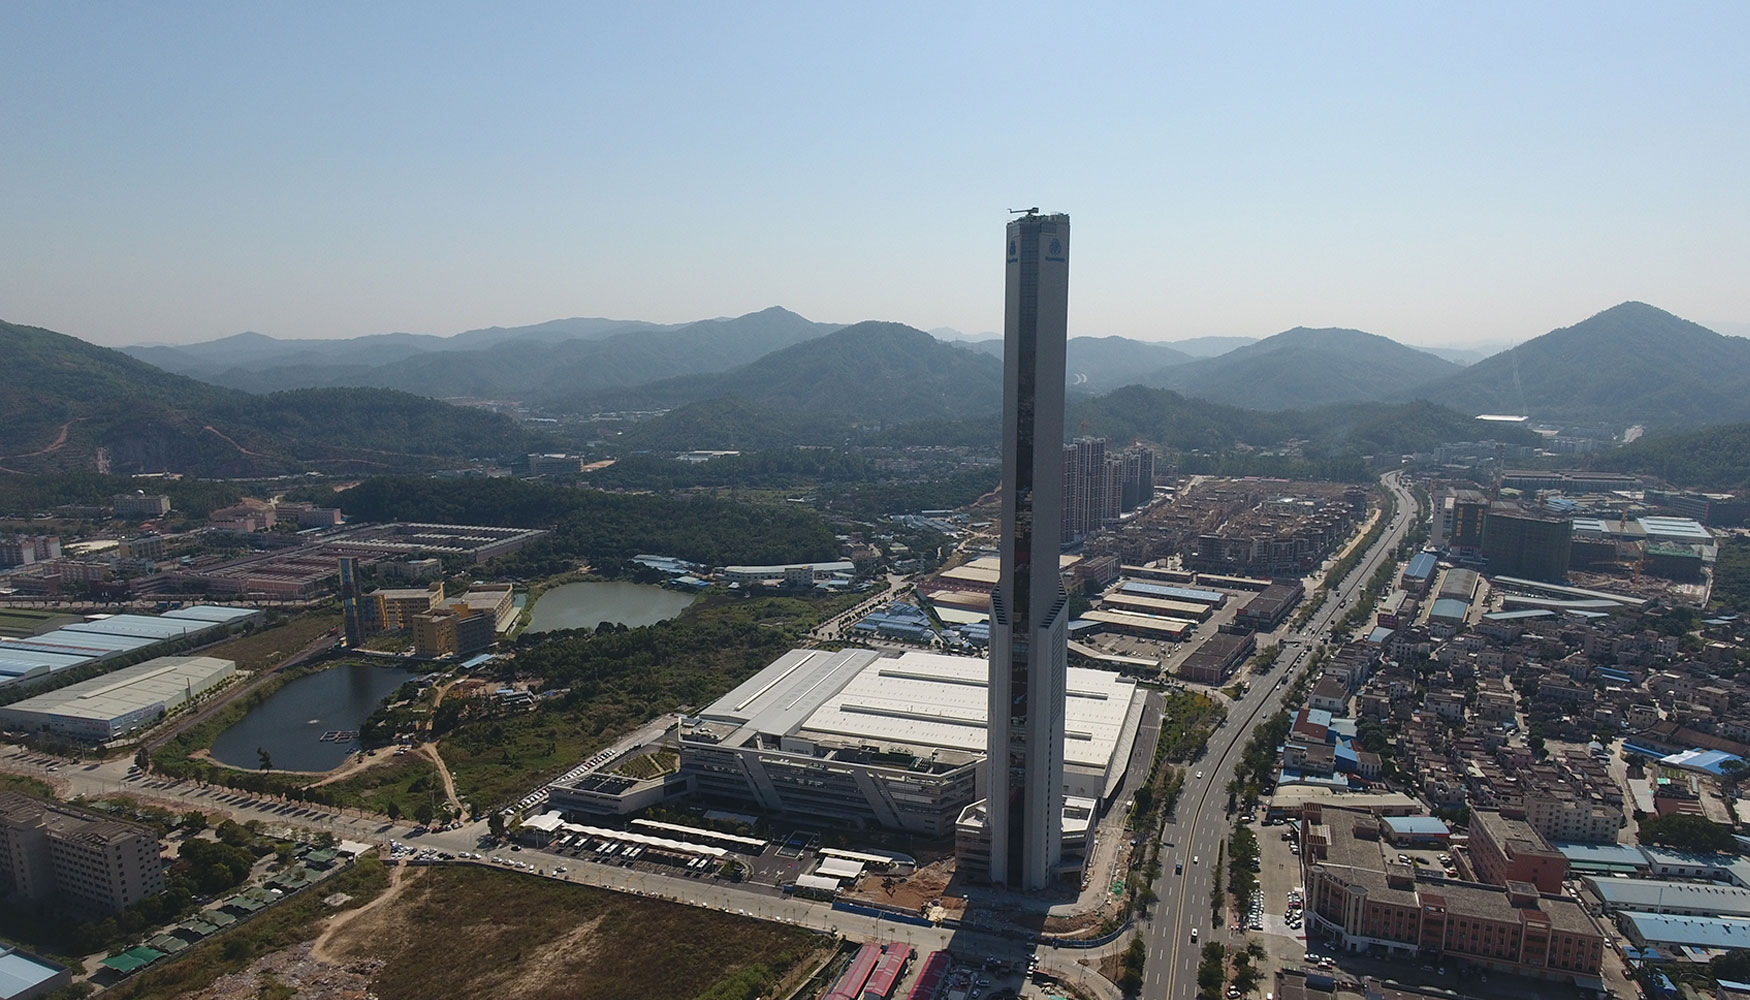 La planta y nueva torre de pruebas inaugurada por Thyssenkrupp en la ciudad de Zhongshan, provincia de Guangdong, en China...